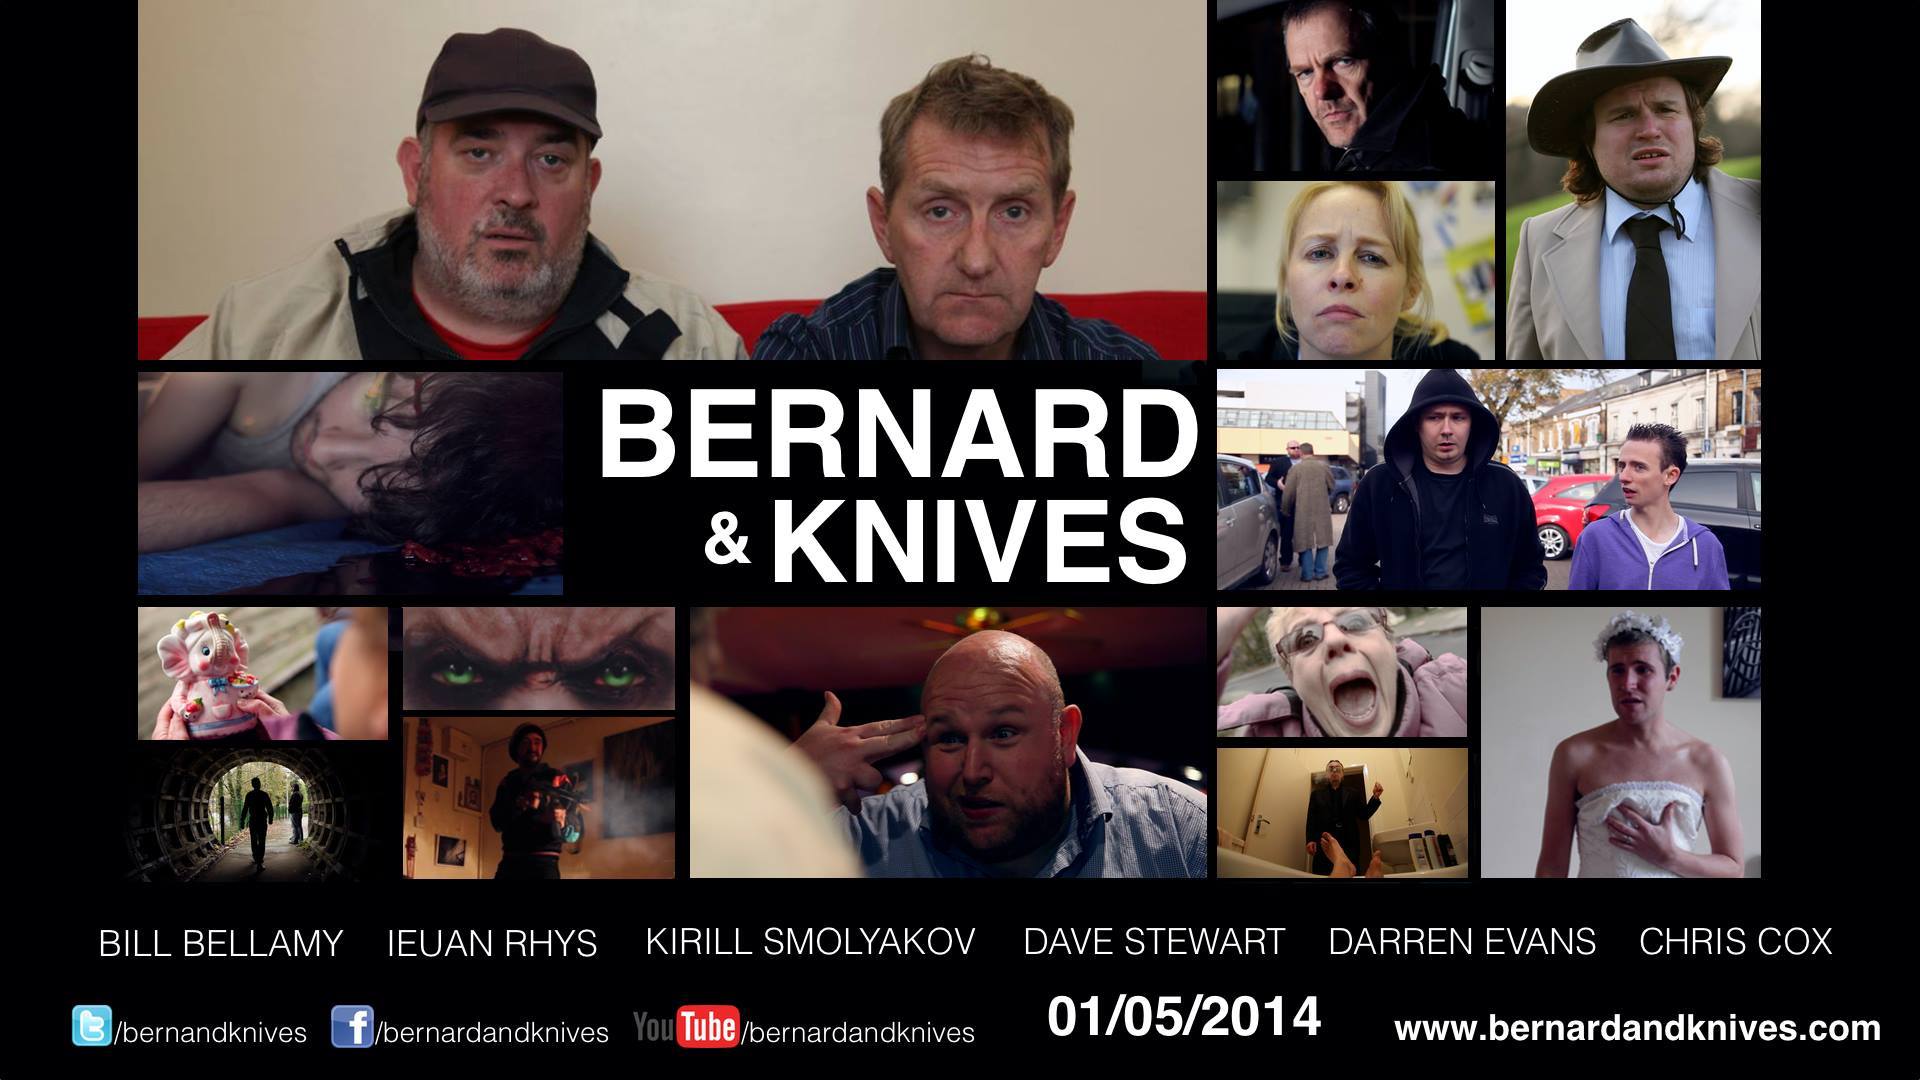 Bernard & Knives